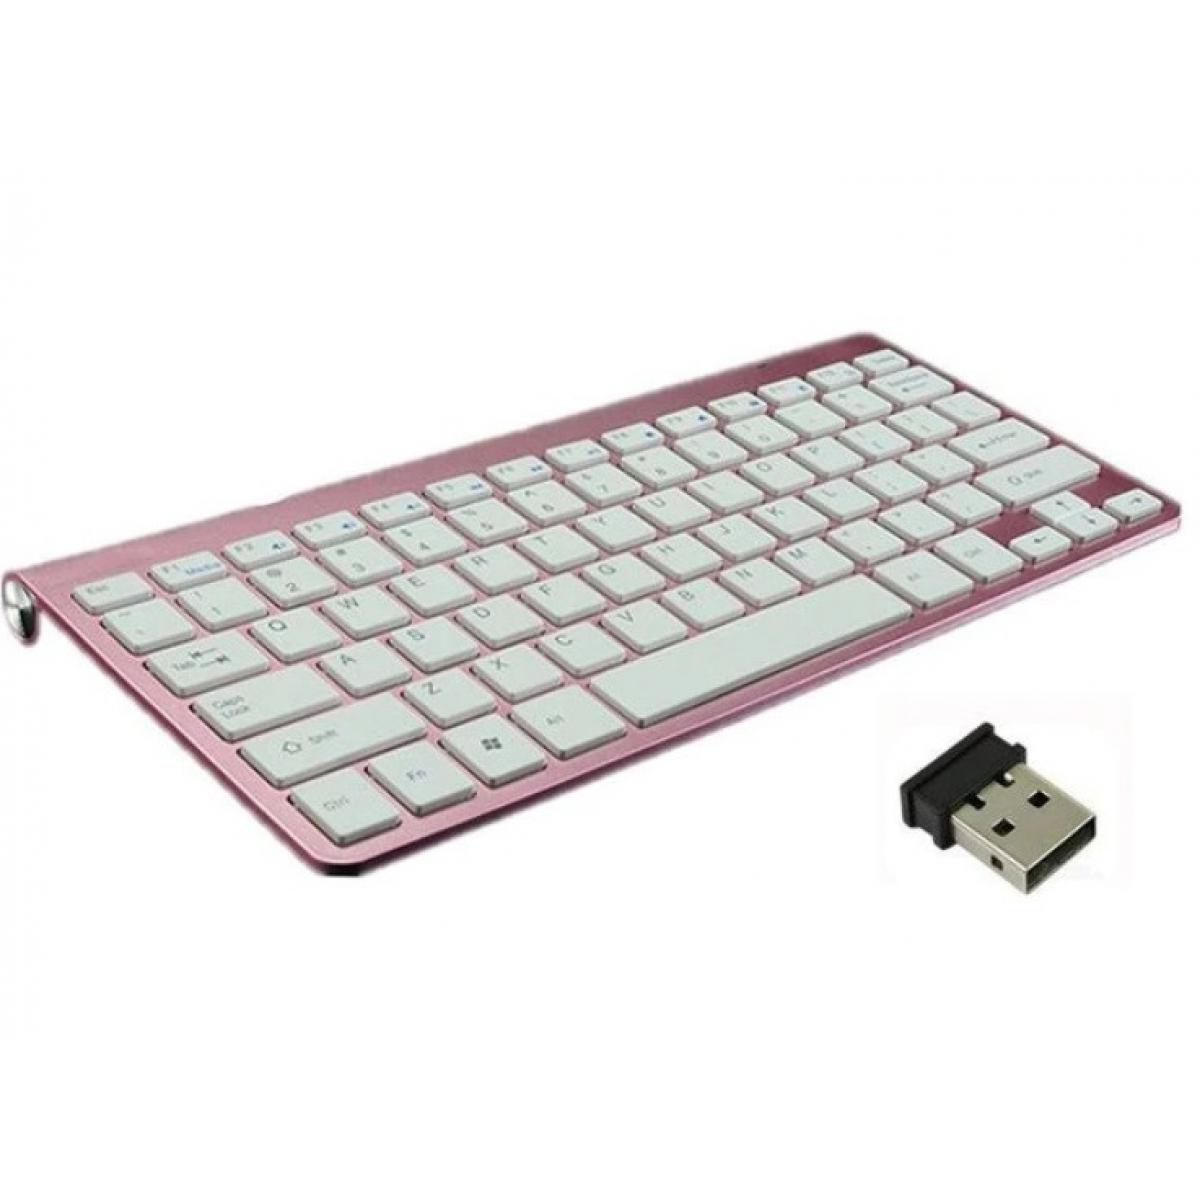 Shot - Clavier Sans Fil Metal pour PC MICROSOFT USB QWERTY Piles (ROSE) - Clavier